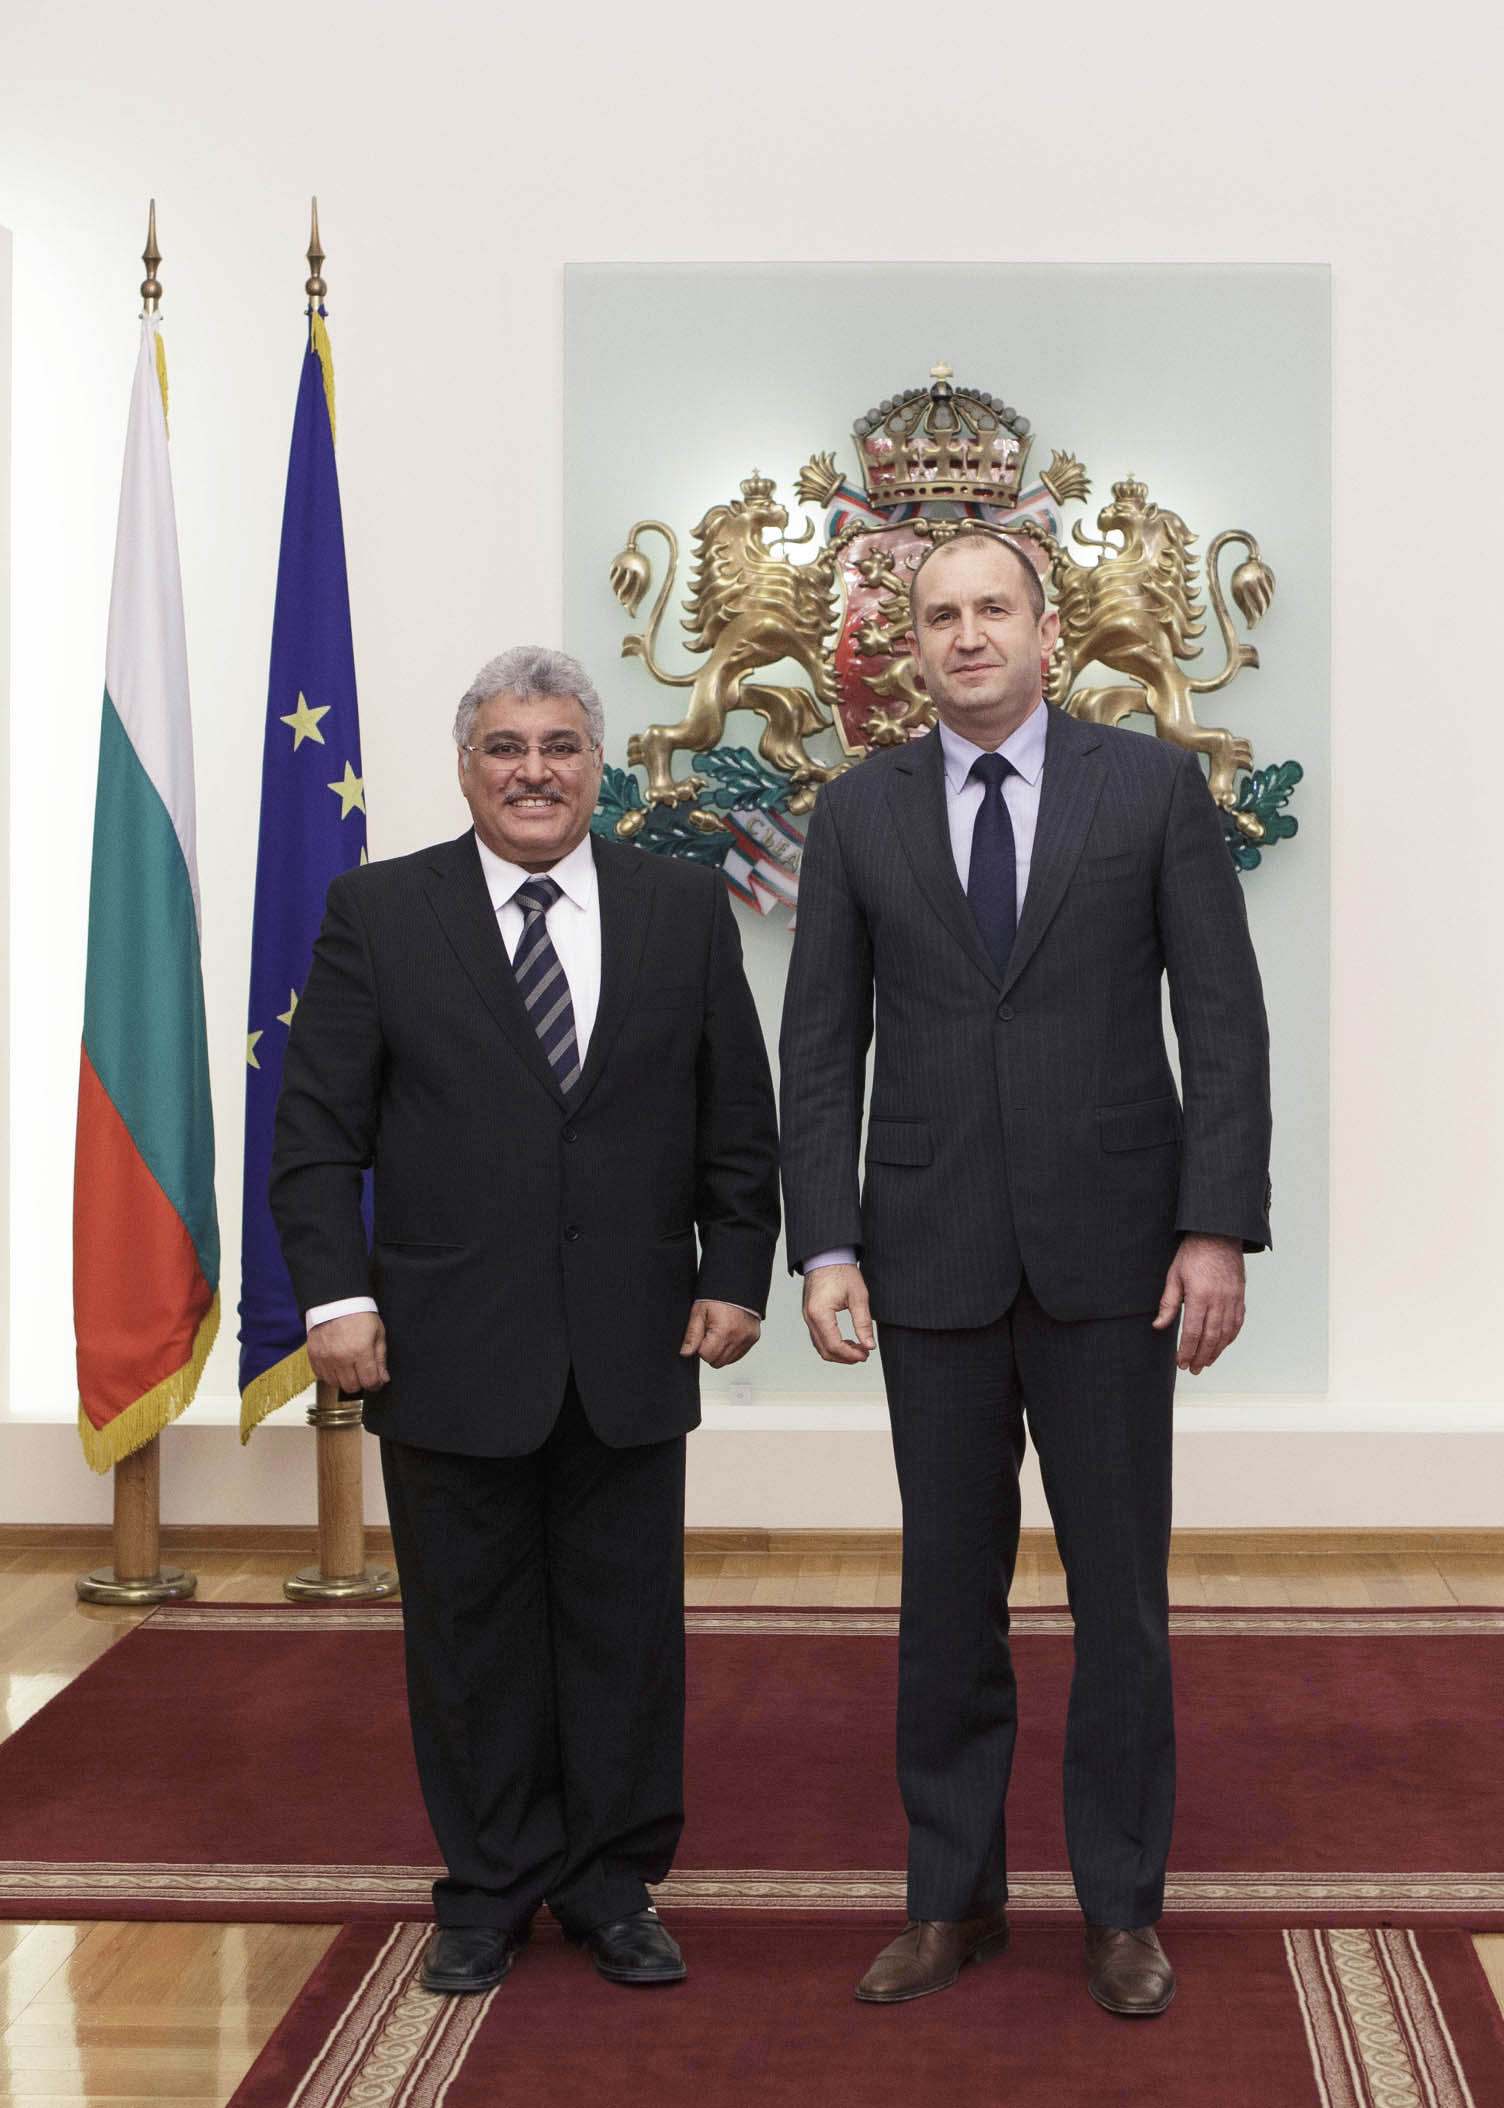 السفير يعقوب العتيقي مهنئاً الرئيس البلغاري الجديد الجنرال رومن رادف بمناسبة تنصيبه